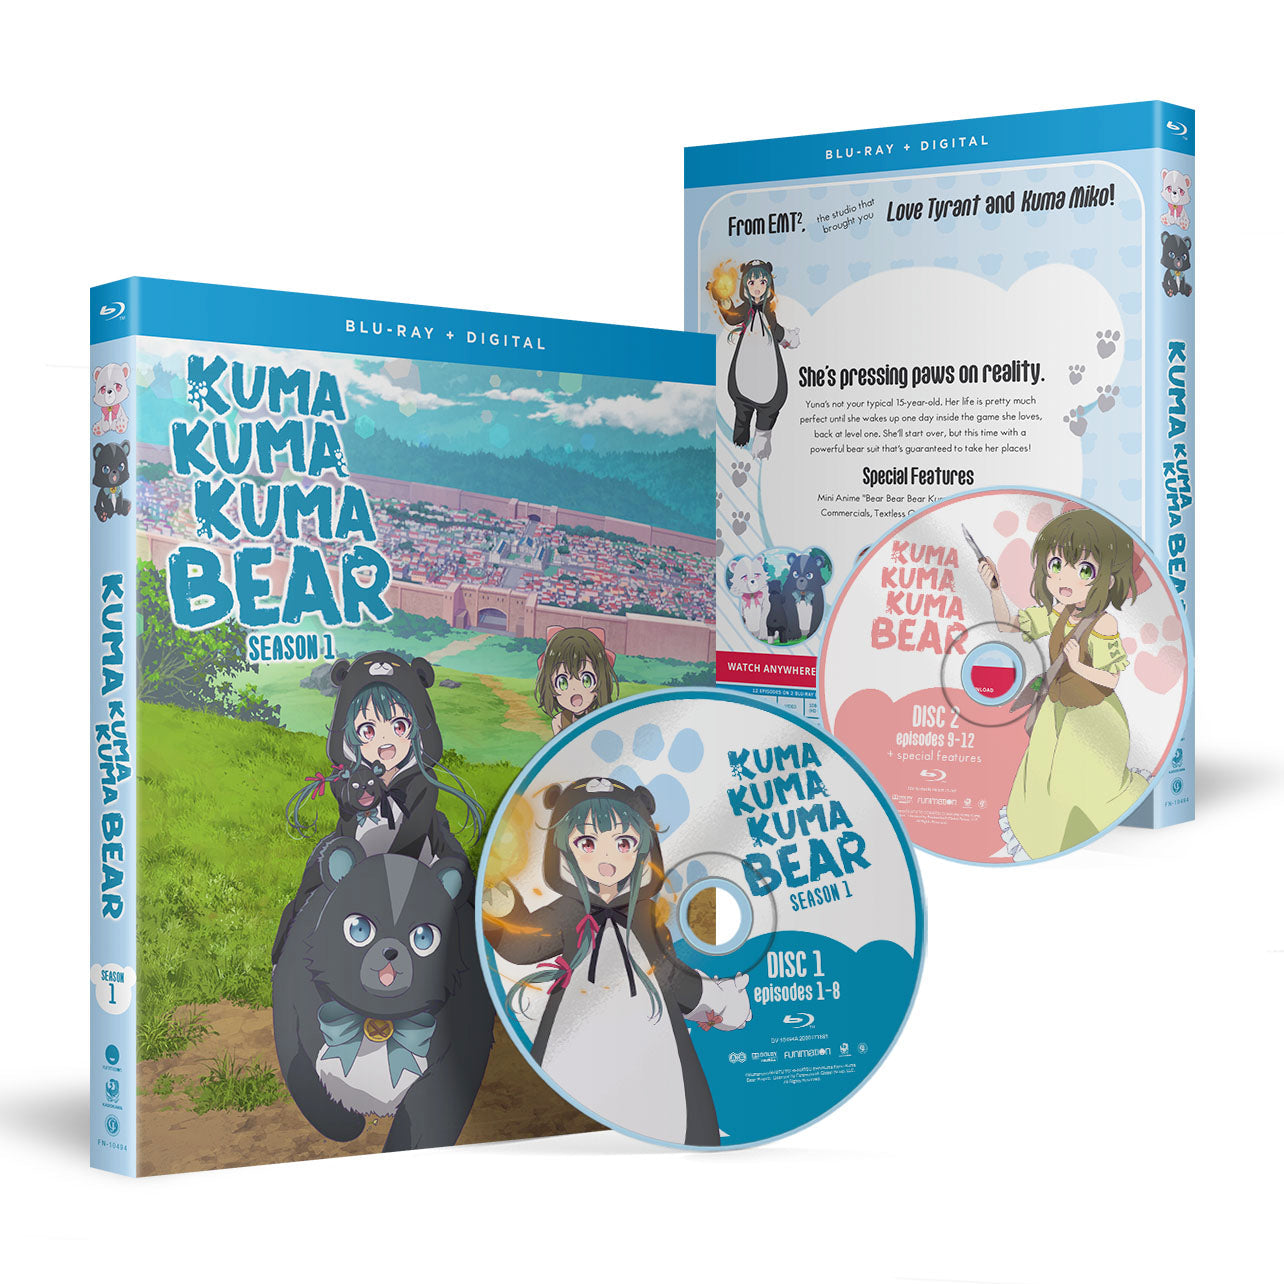 Kuma Kuma Kuma Bear Season 1 Blu Ray Crunchyroll Store 